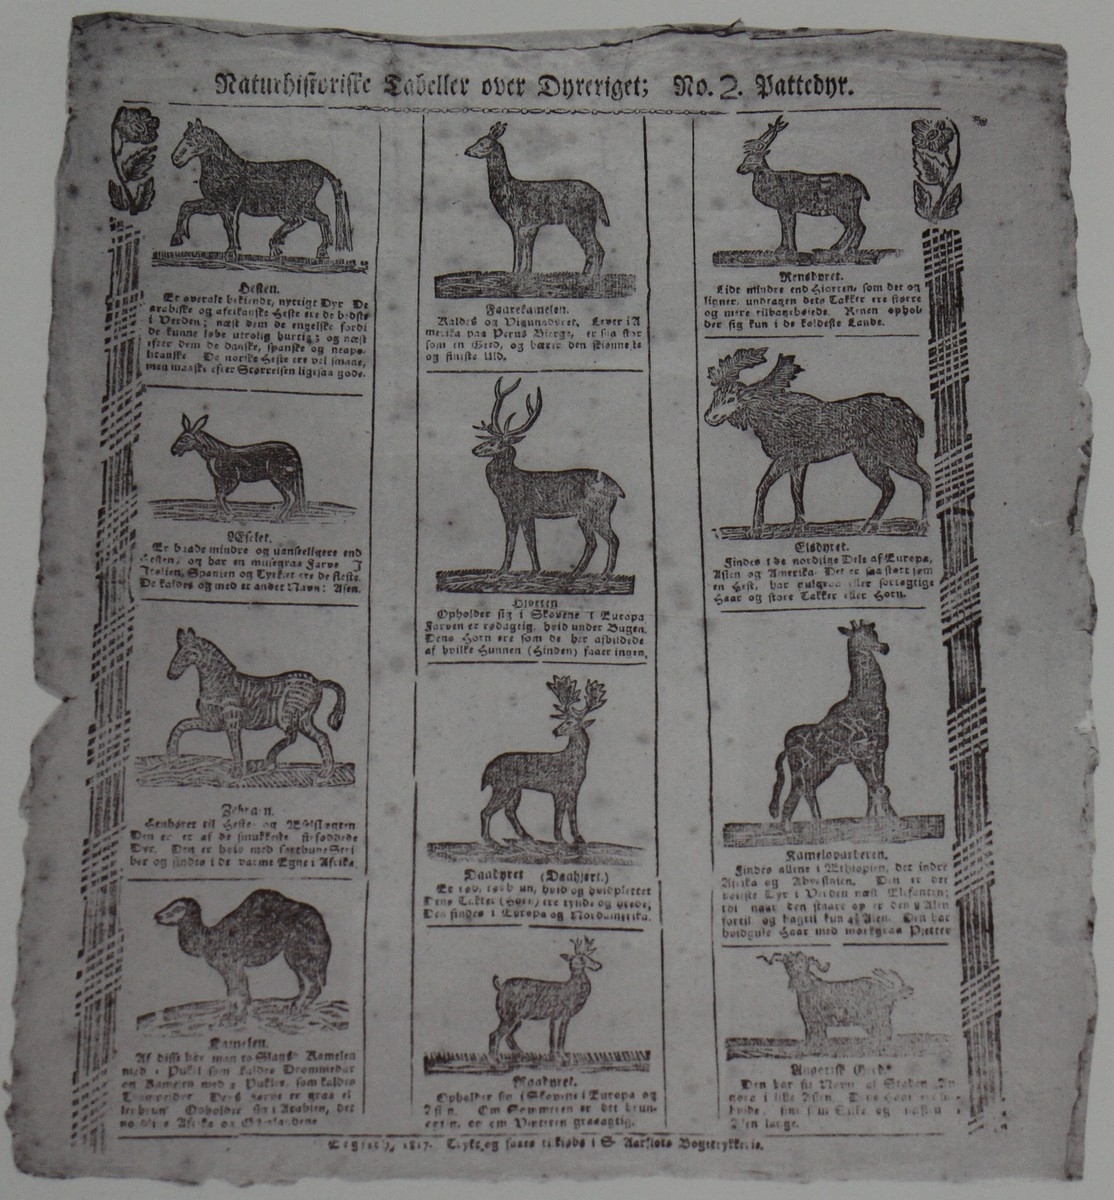 Naturhistorisk tabell med informasjon om 12 ulike pattedyr. Ti av desse er: hesten, eselet, zebraen, kamelen, hjorten, dådyret, rådyret, reinsdyret, elgdyret, og sjiraffen. Dei to andre er vanskelege å lese. Teksta er trykt med gotisk skrift i Sivert Aarflots Boktrykkeri. Tabellen er datert 1817. Sivert Aarflot (1759-1817) var ein lærar, gardbrukar, lensmann, boktrykkar og bladutgjevar i Volda på Sunnmøre. Han var den fyrste som opna boktrykkeri utanfor dei store byane i 1809. Tabellen med informasjon om pattedyra er i glas og ramme.

Kjelde:
https://nn.wikipedia.org/wiki/Sivert_Aarflot (Lesedato: 03.03.2020)